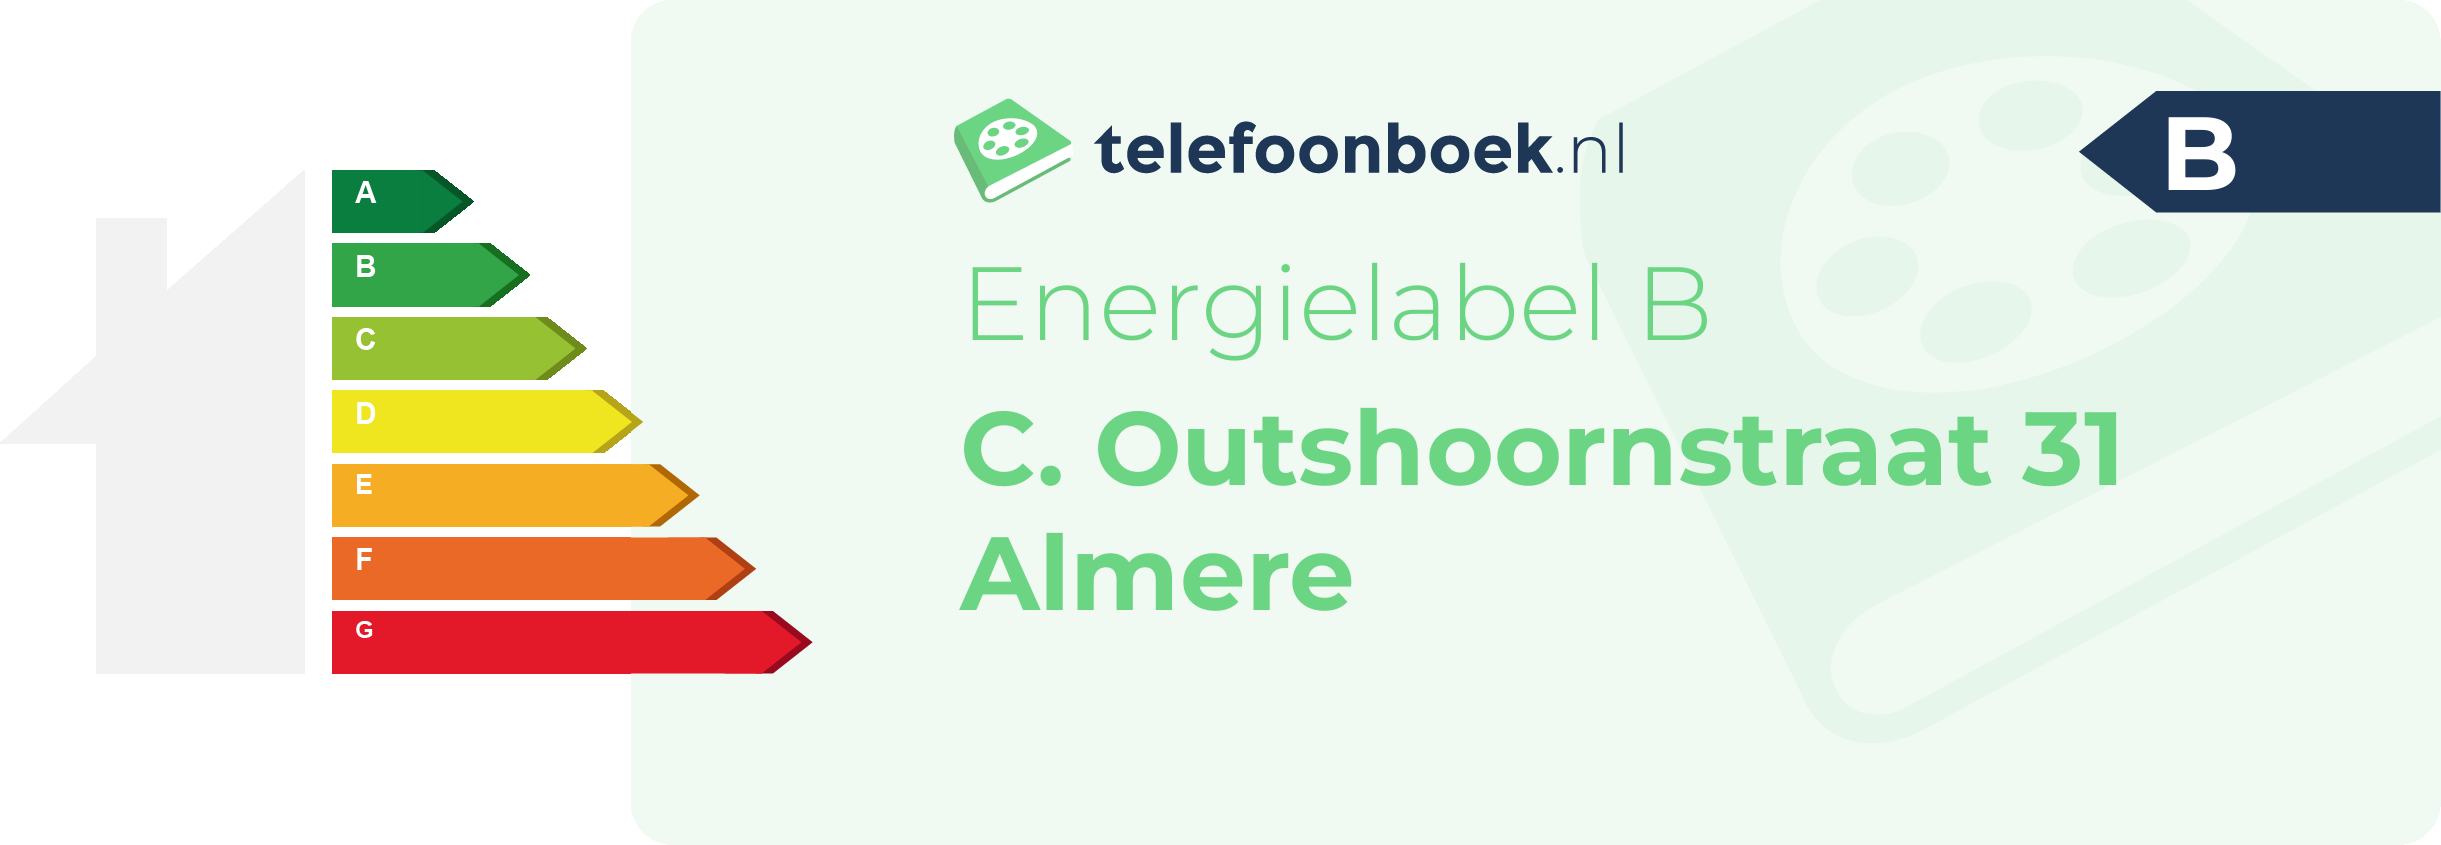 Energielabel C. Outshoornstraat 31 Almere